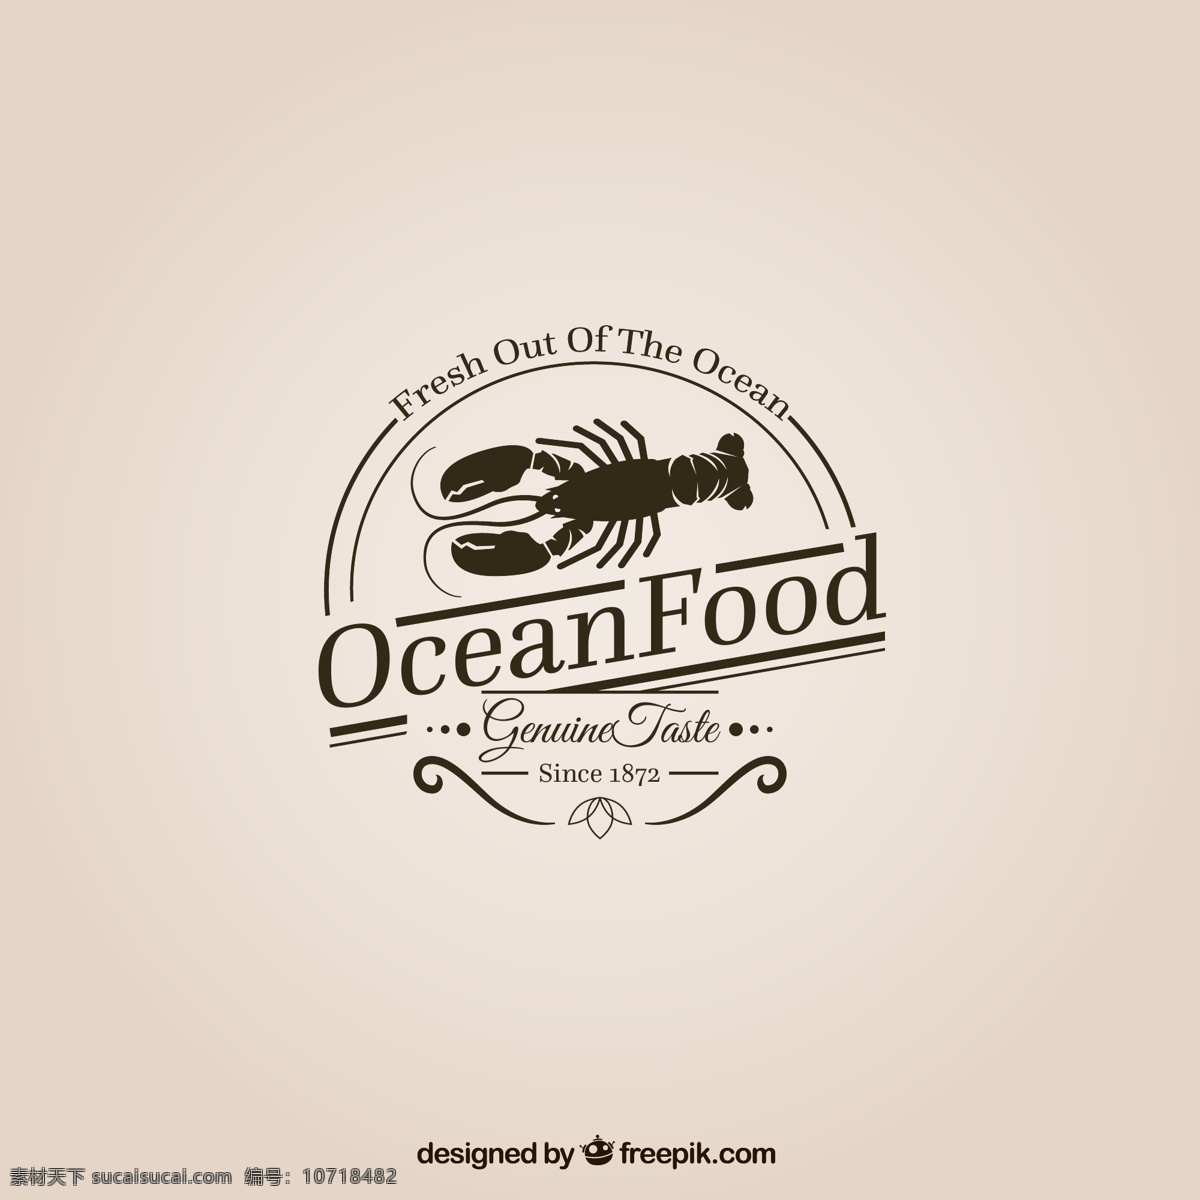 创意 海产品 标志设计 矢量 龙虾 标志 海洋 海洋食物 矢量图